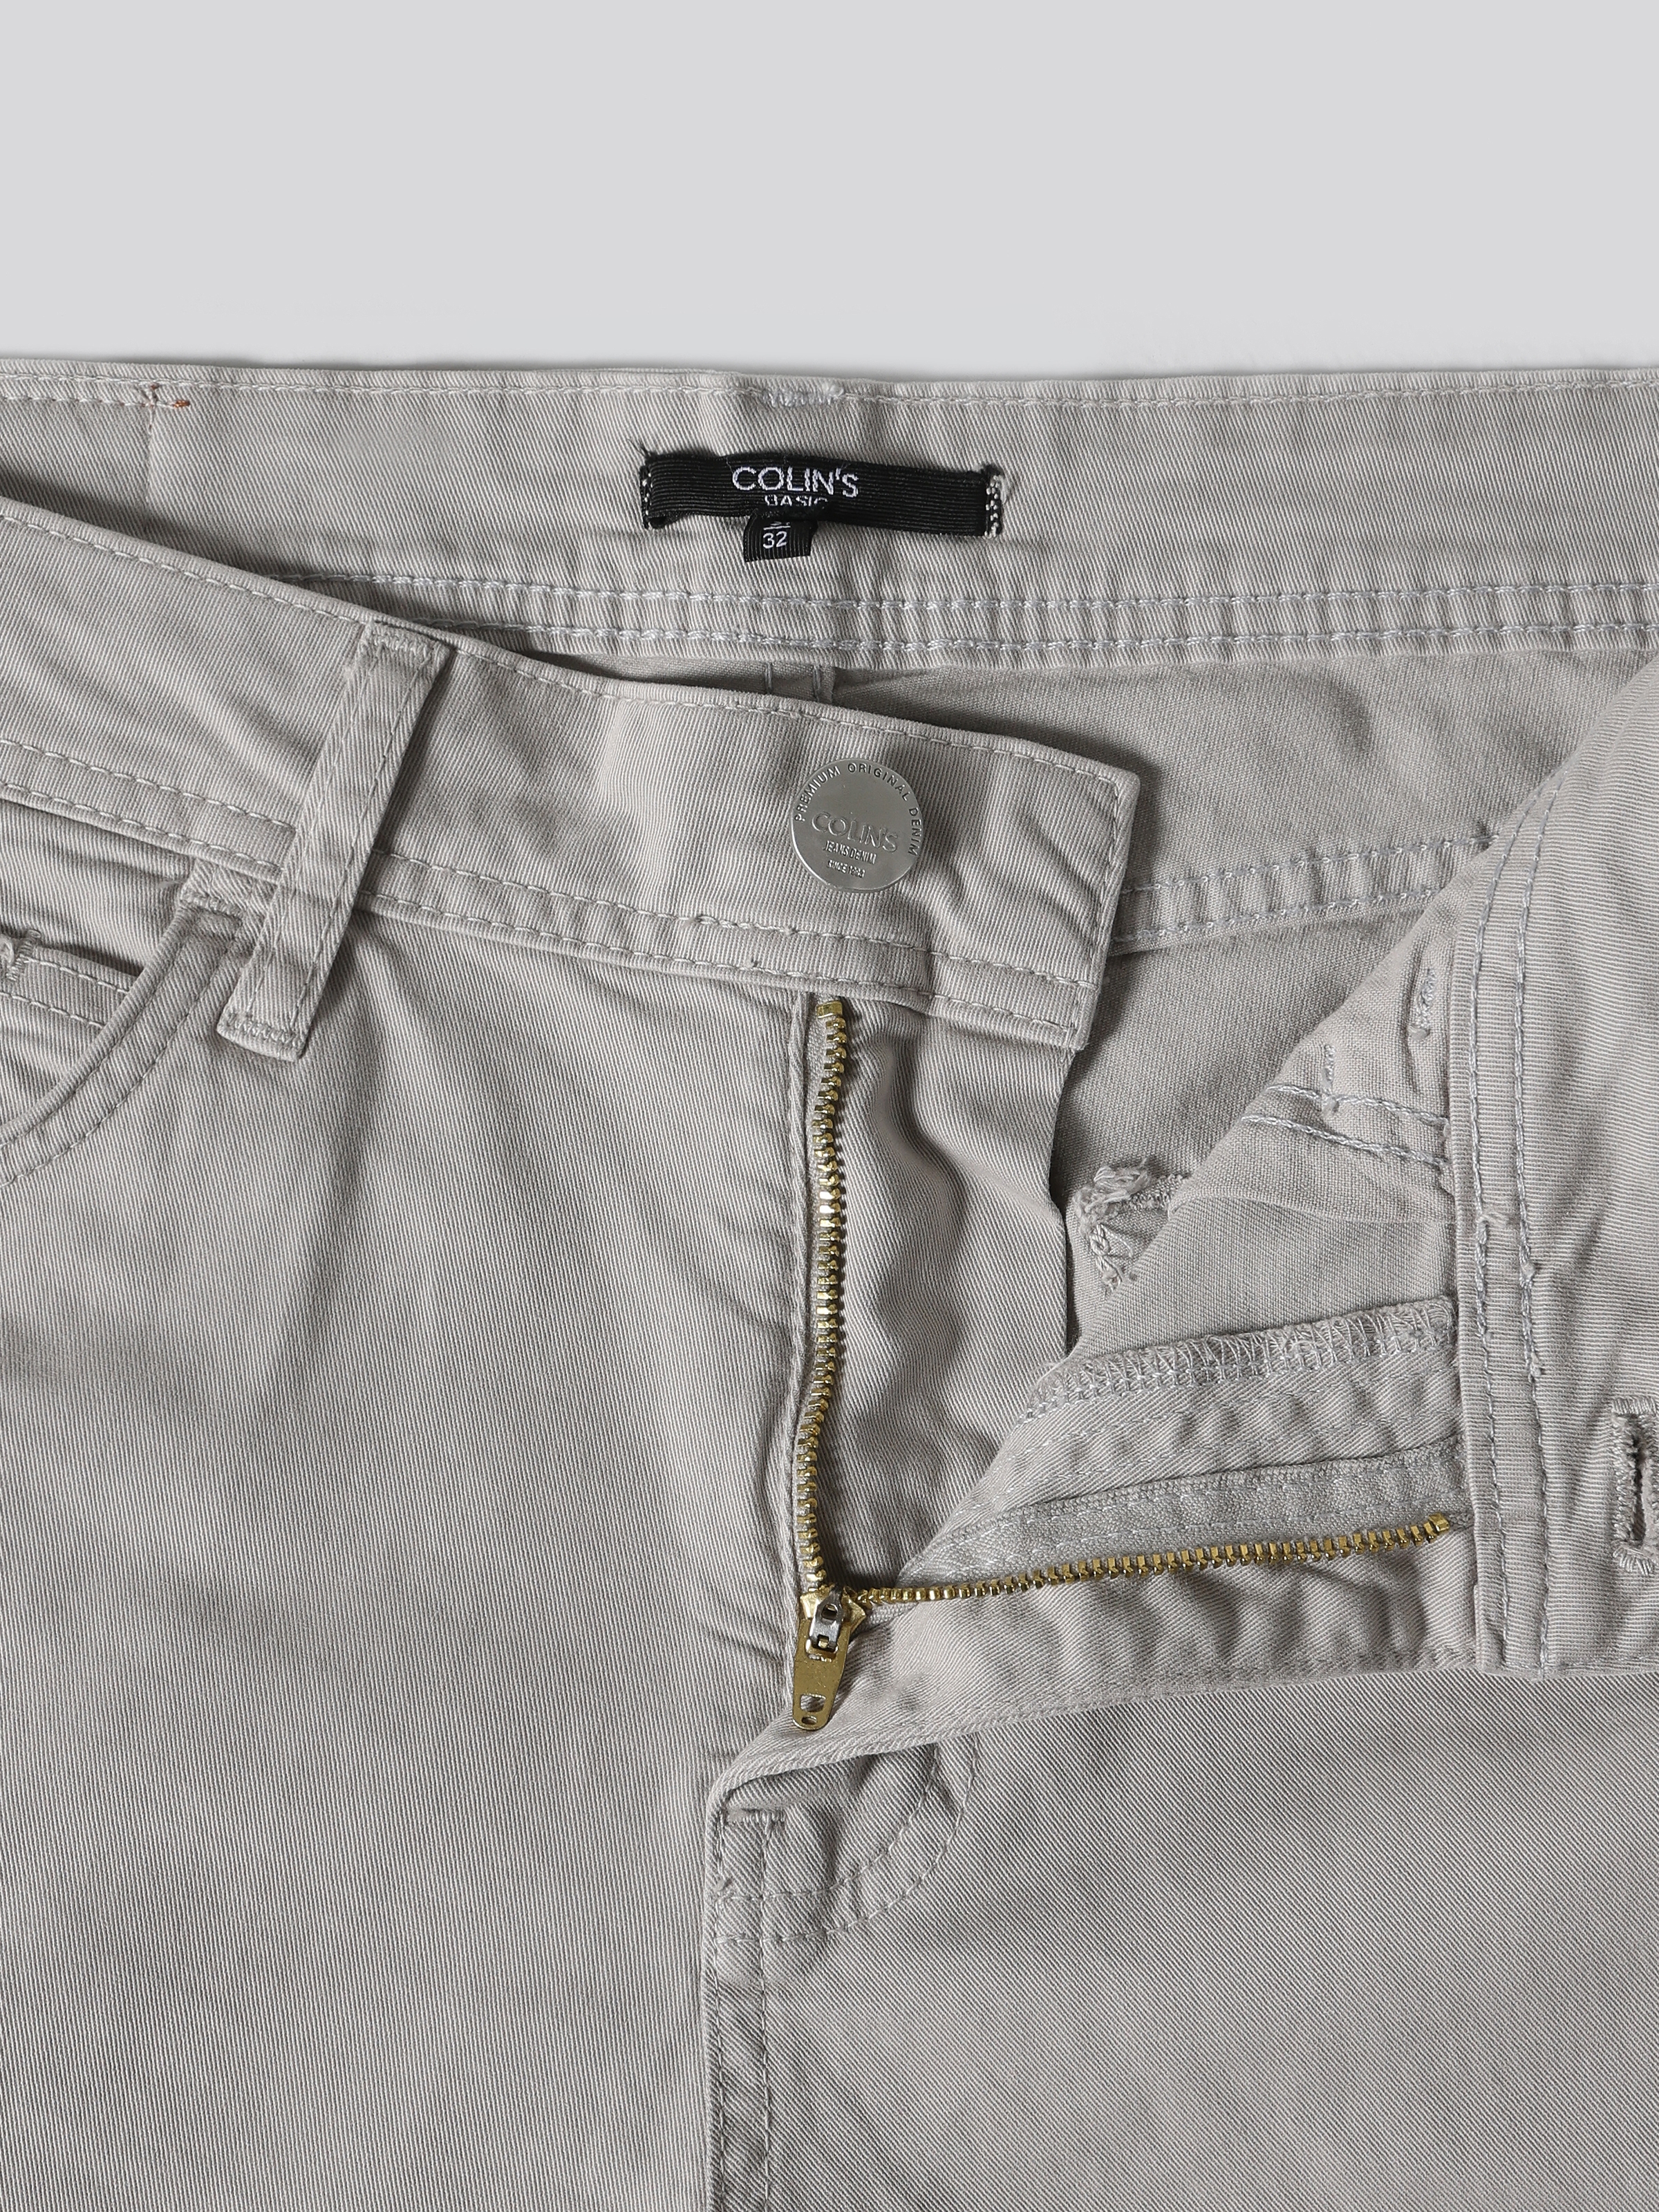 Afficher les détails de Pantalon En Pierre Pour Homme, Coupe Droite, Taille Basse, Jambe Droite